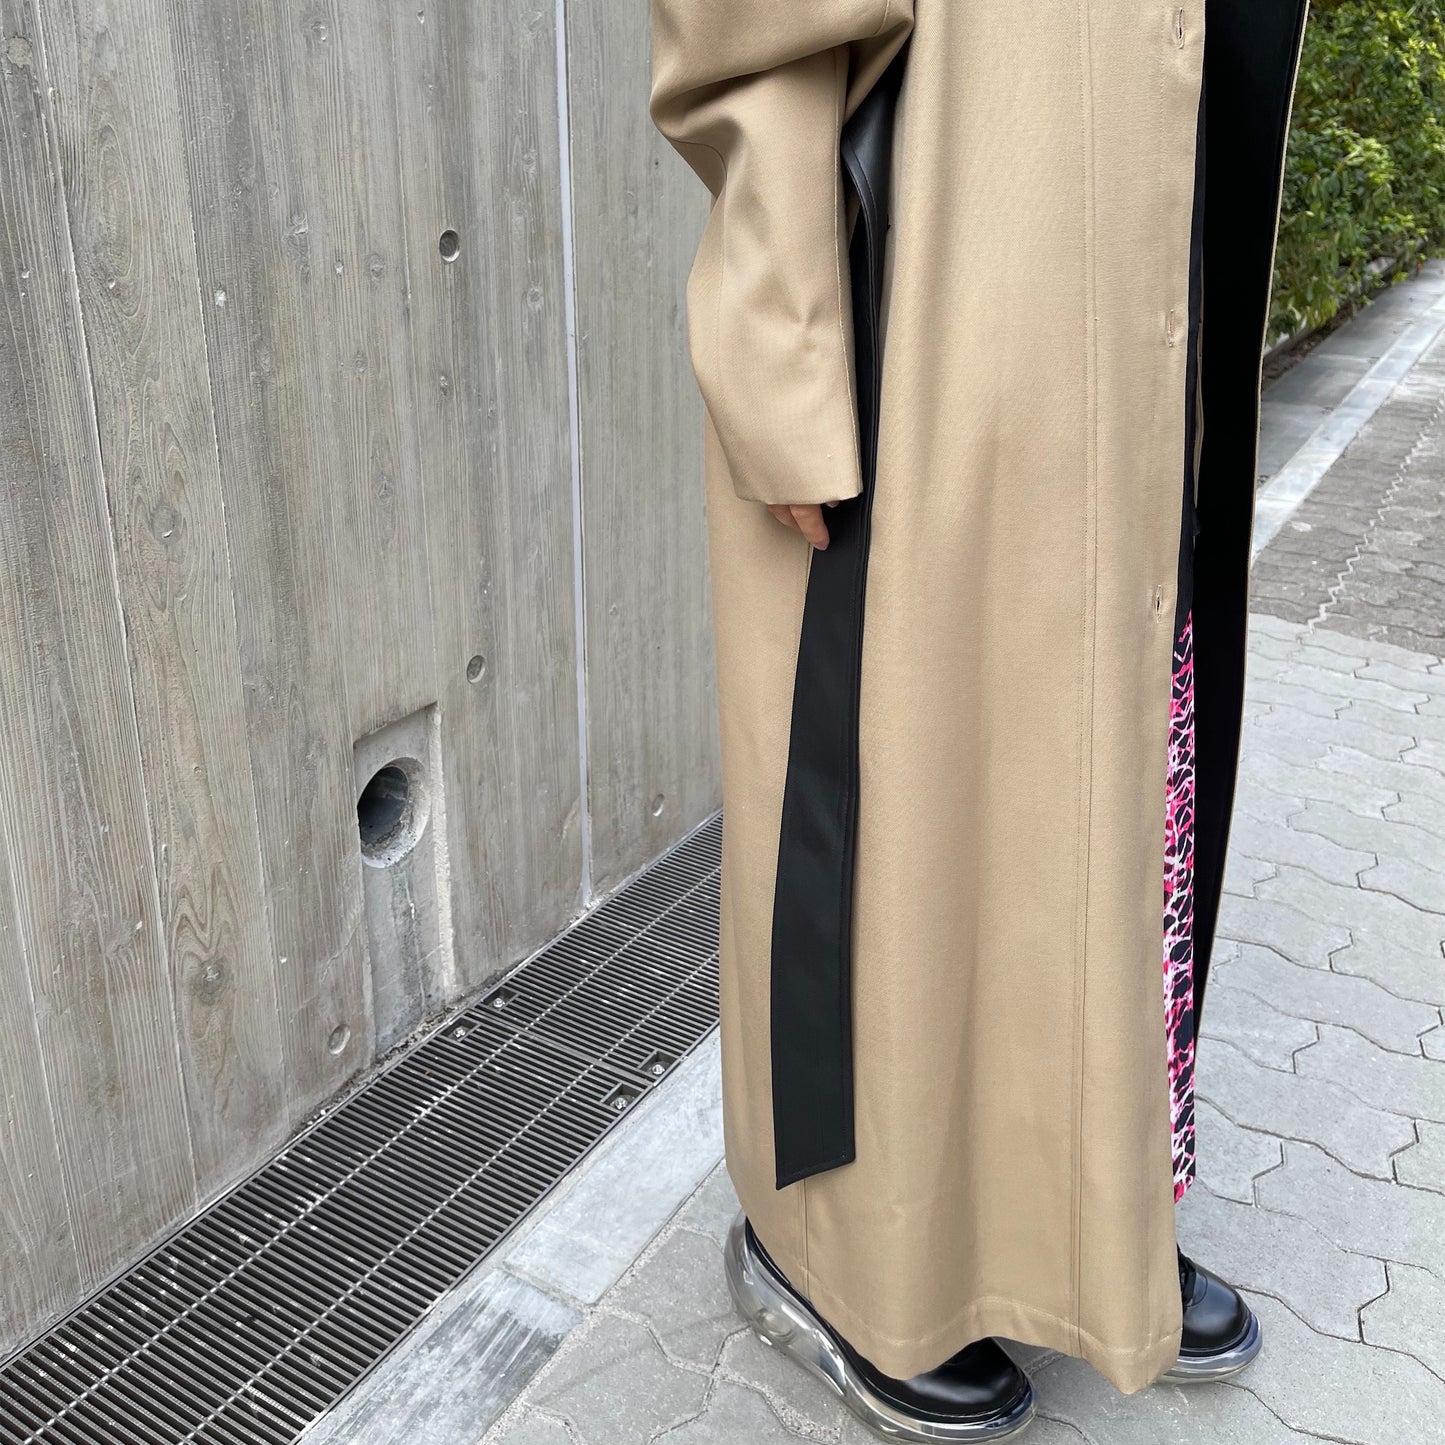 AKIKOAOKI / neuter coat / beige / トレンチ